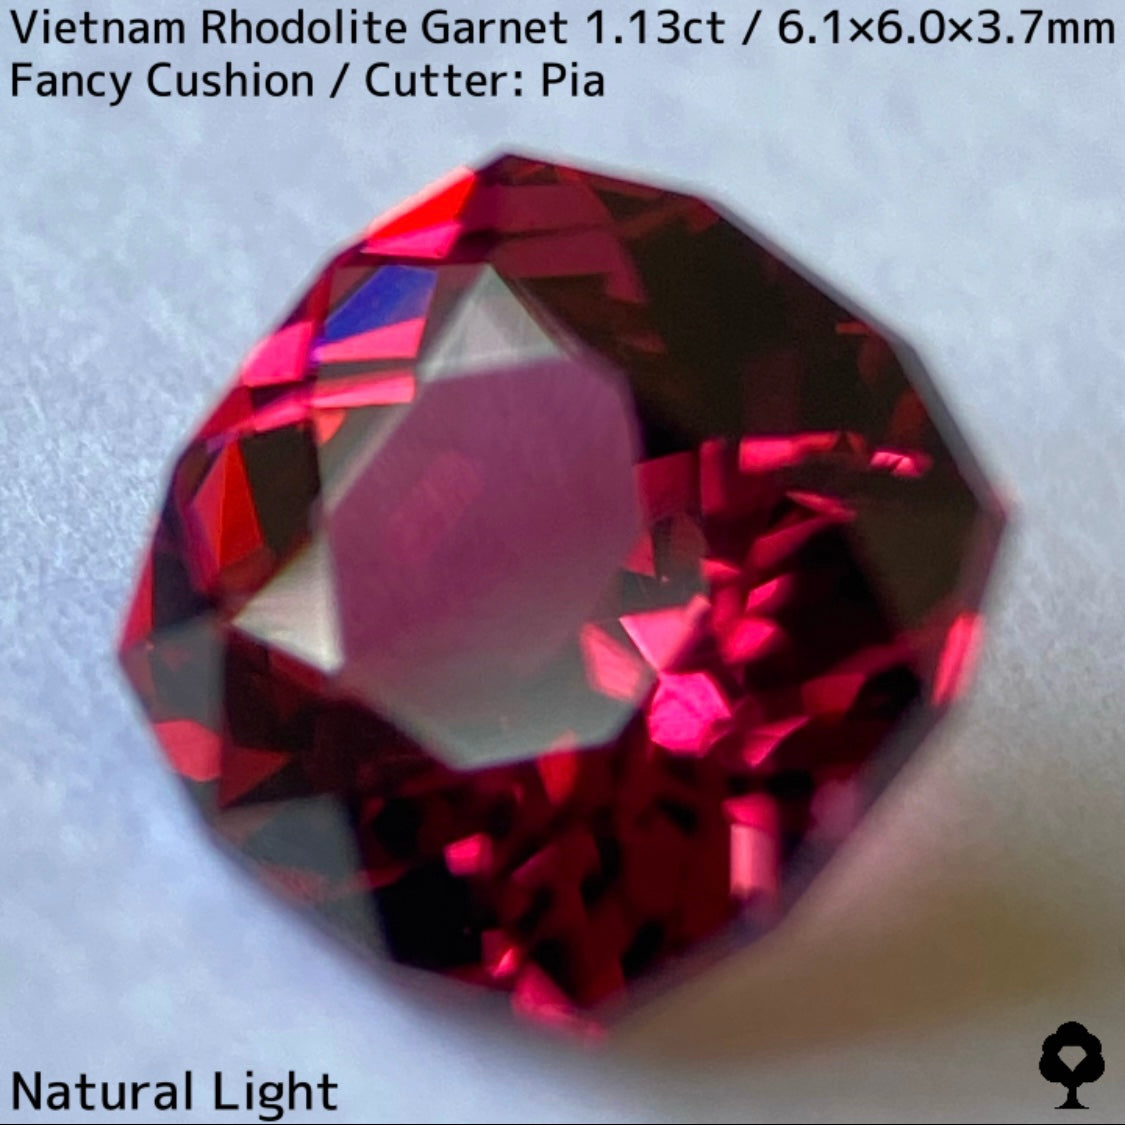 ベトナム産ロードライトガーネット1.13ct★オレンジ混じりのピンクの煌めきがたまらない美結晶ファンシークッション